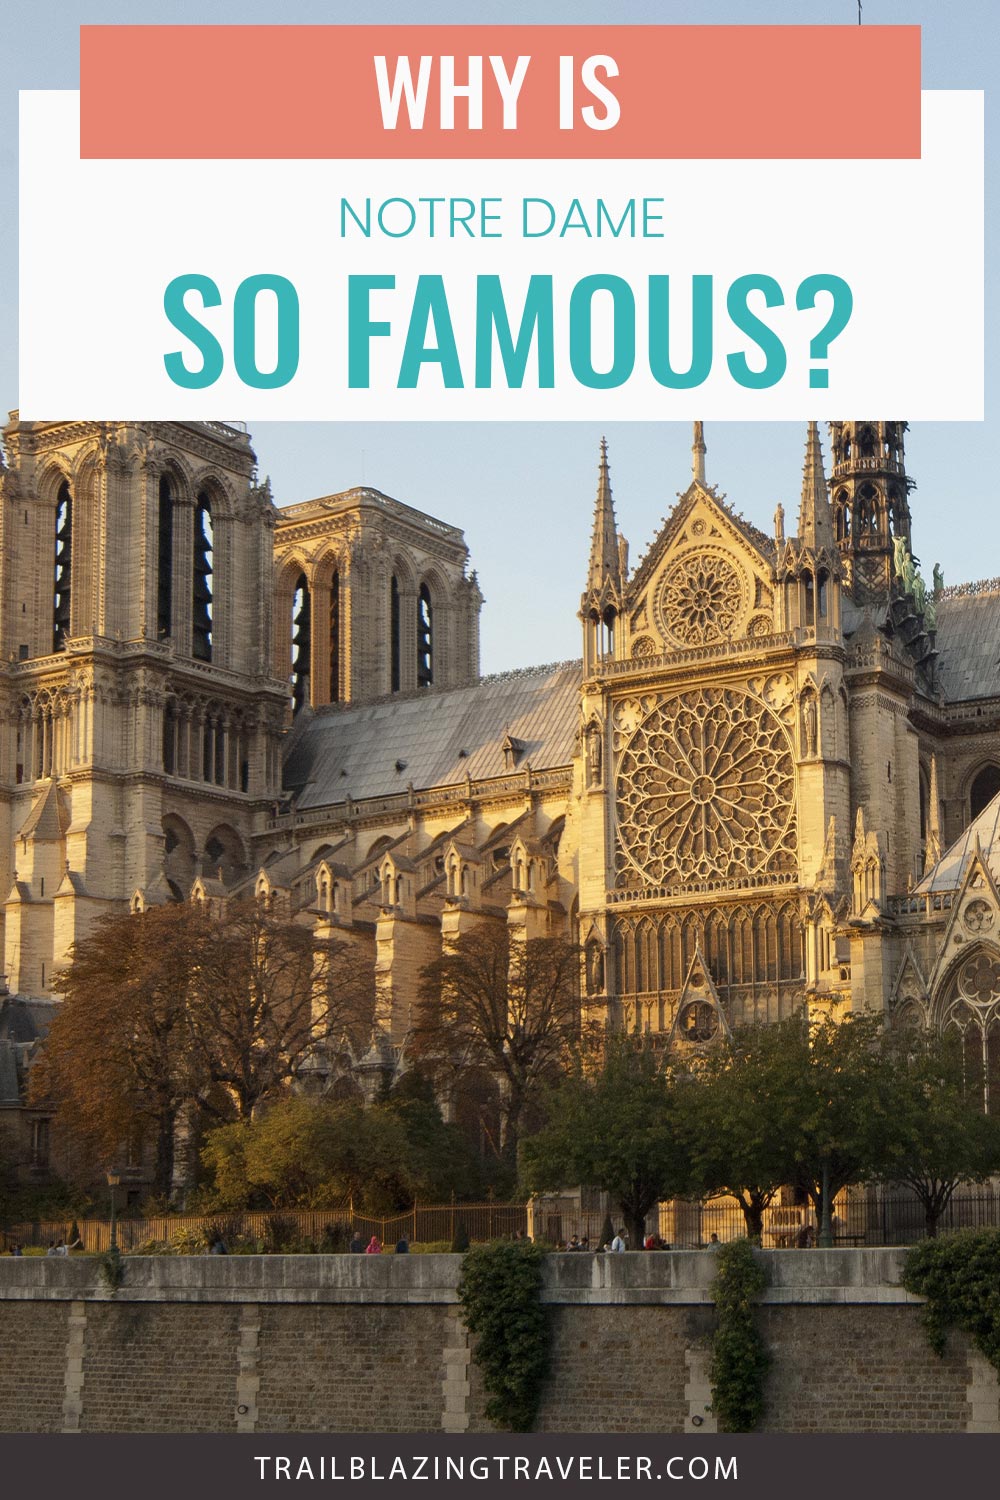 Cathédrale Notre-Dame de Paris - why is it so famous?